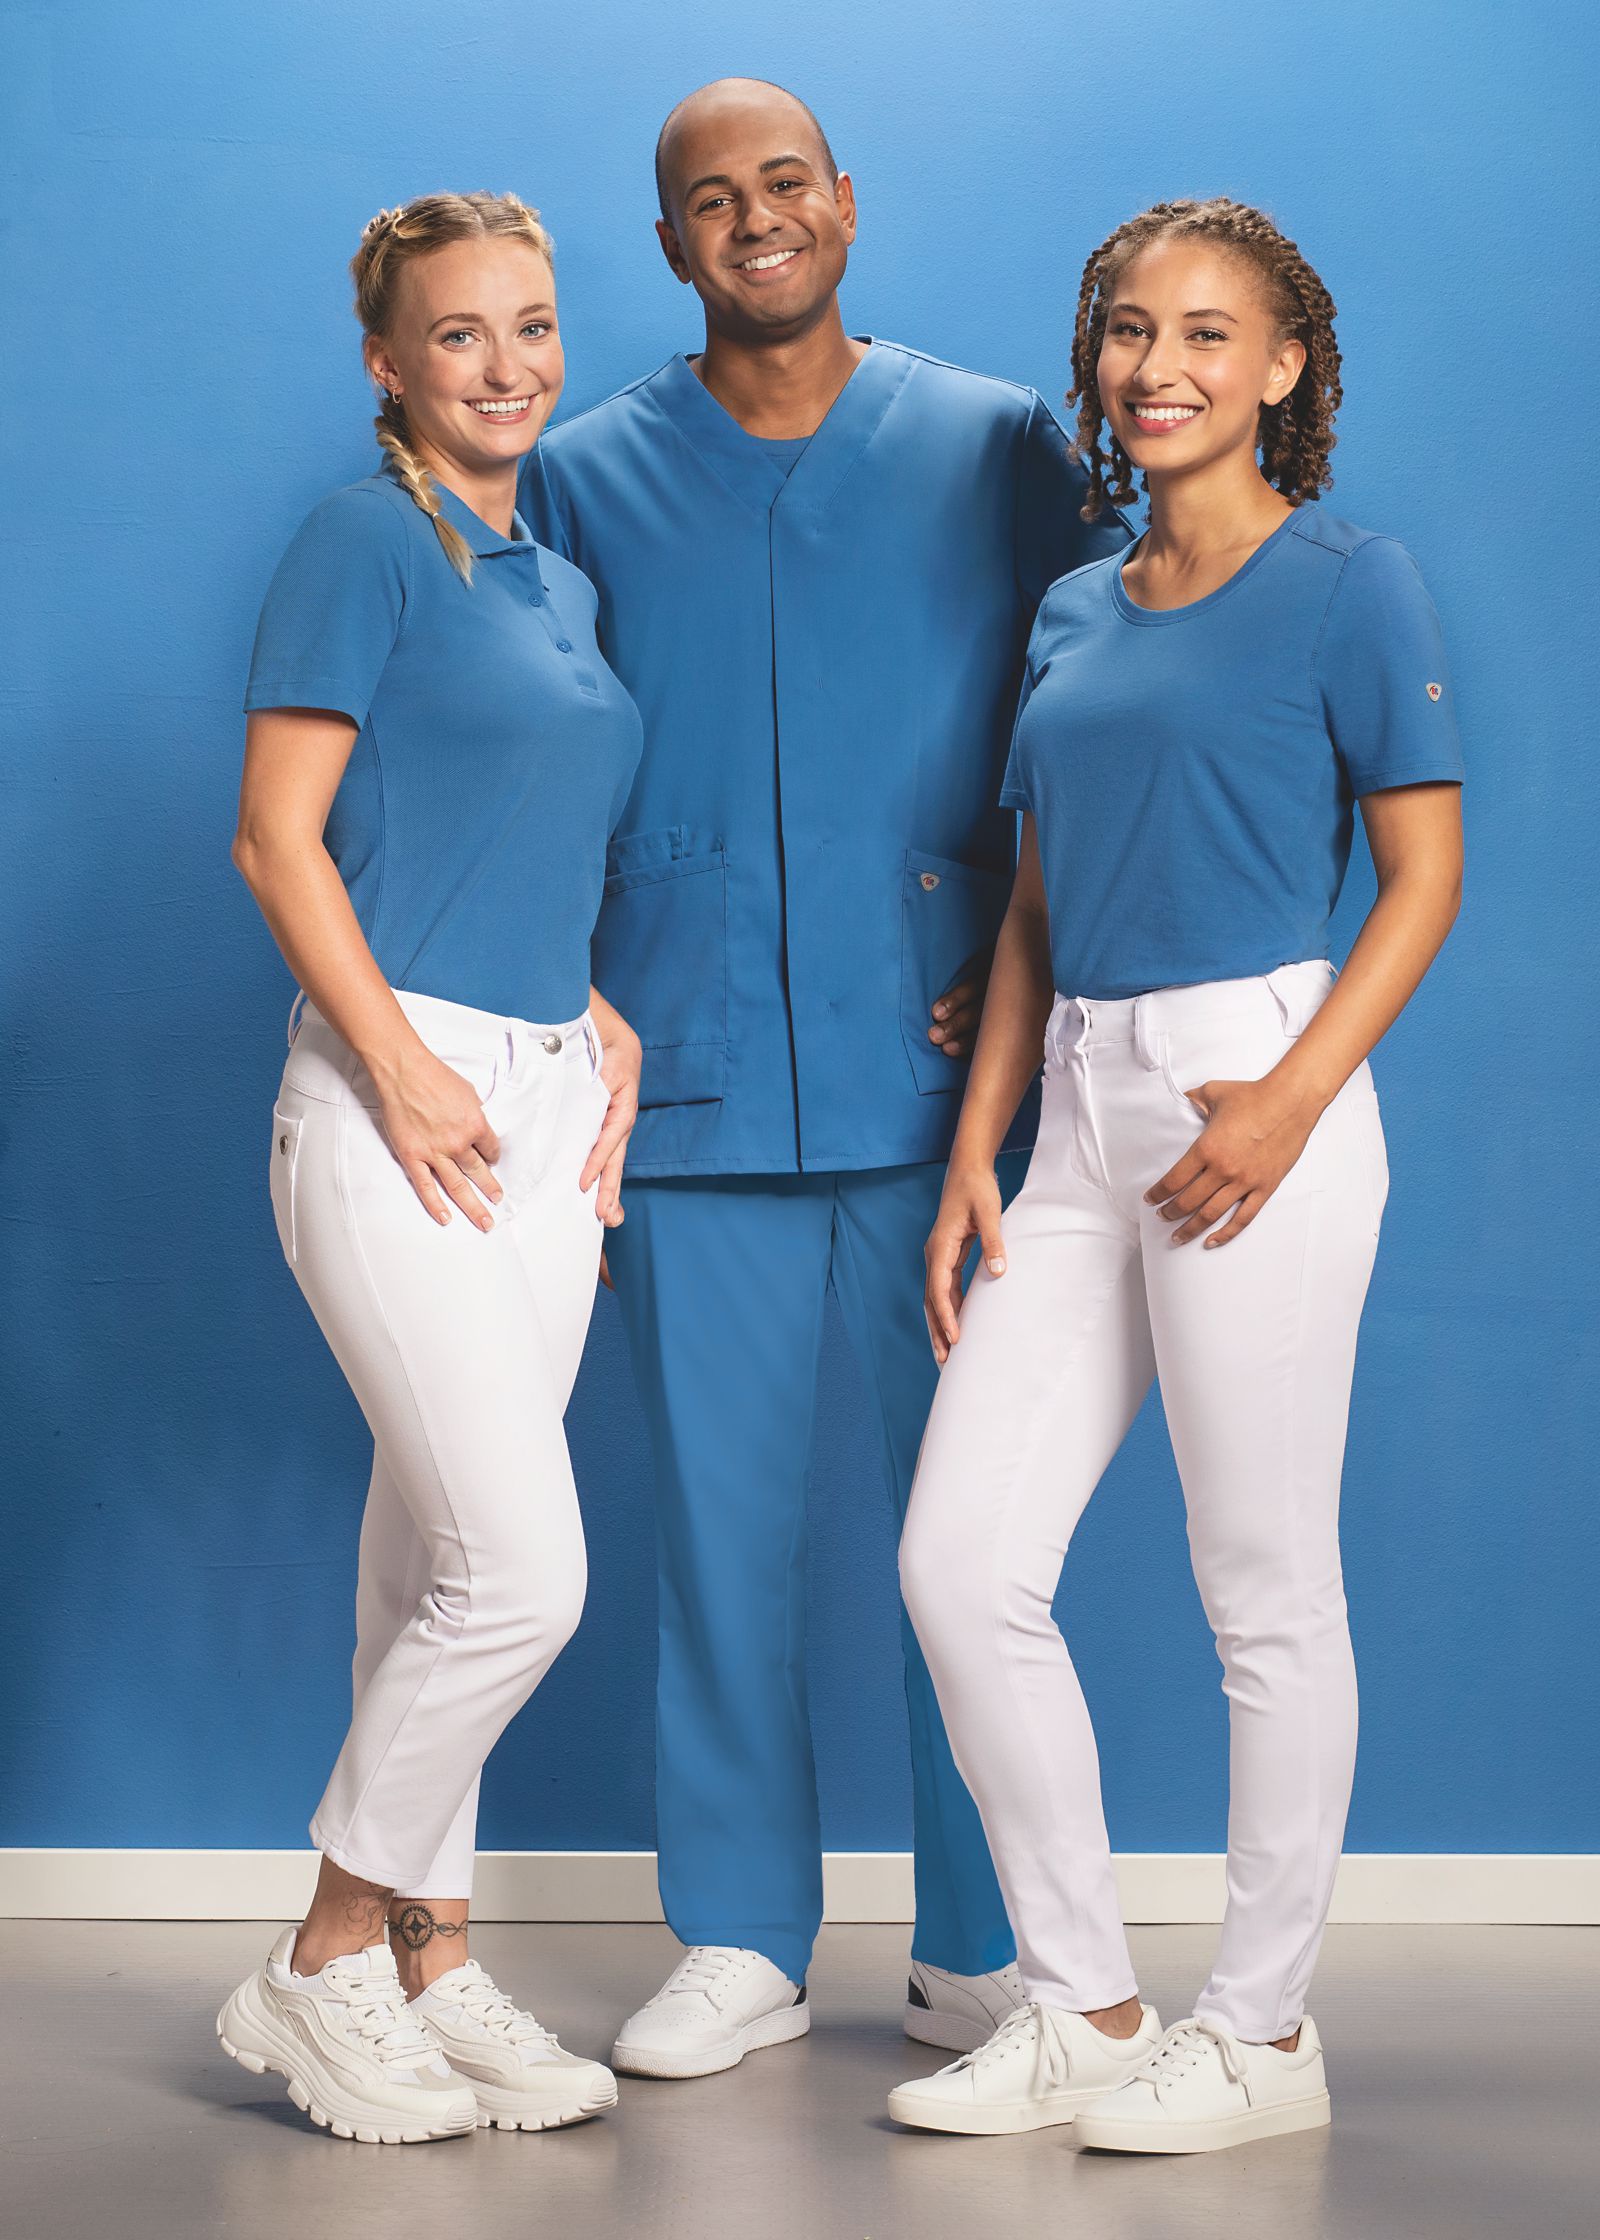 Ein Mann und zwei Frauen in azurblau-weißem Pflege-Outfit